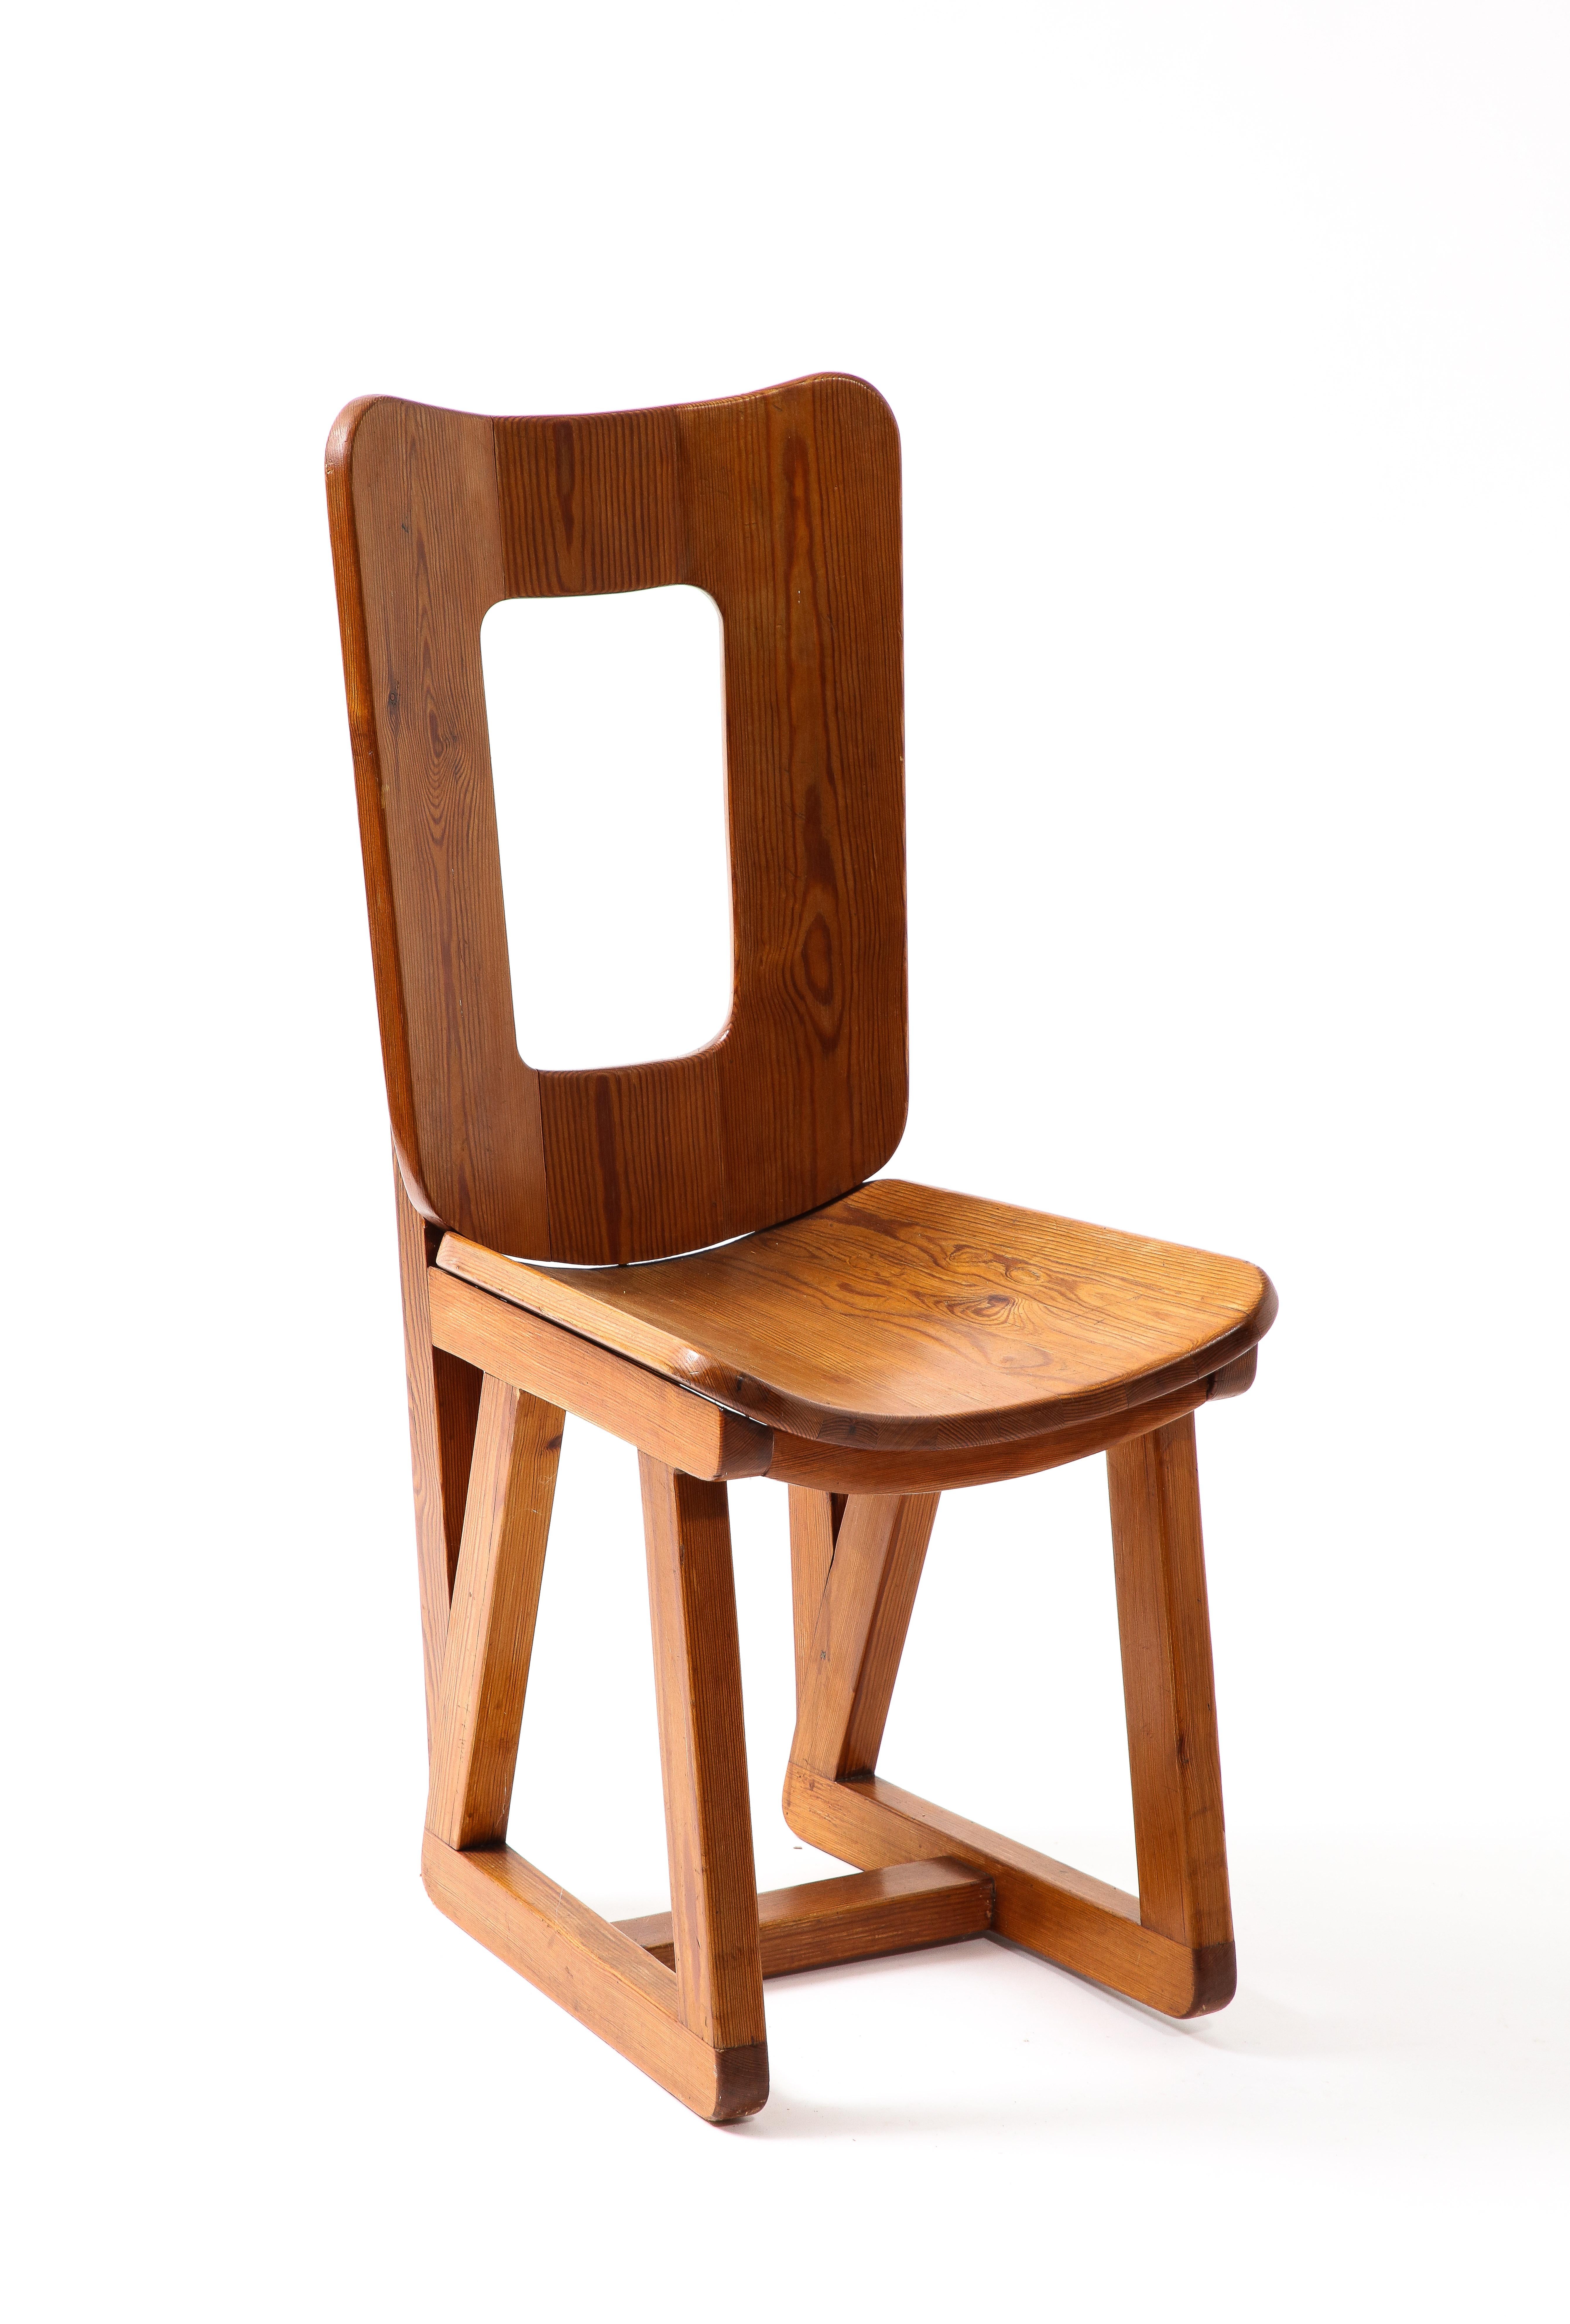 Maison Regain Side Chair, France 1960s For Sale 4